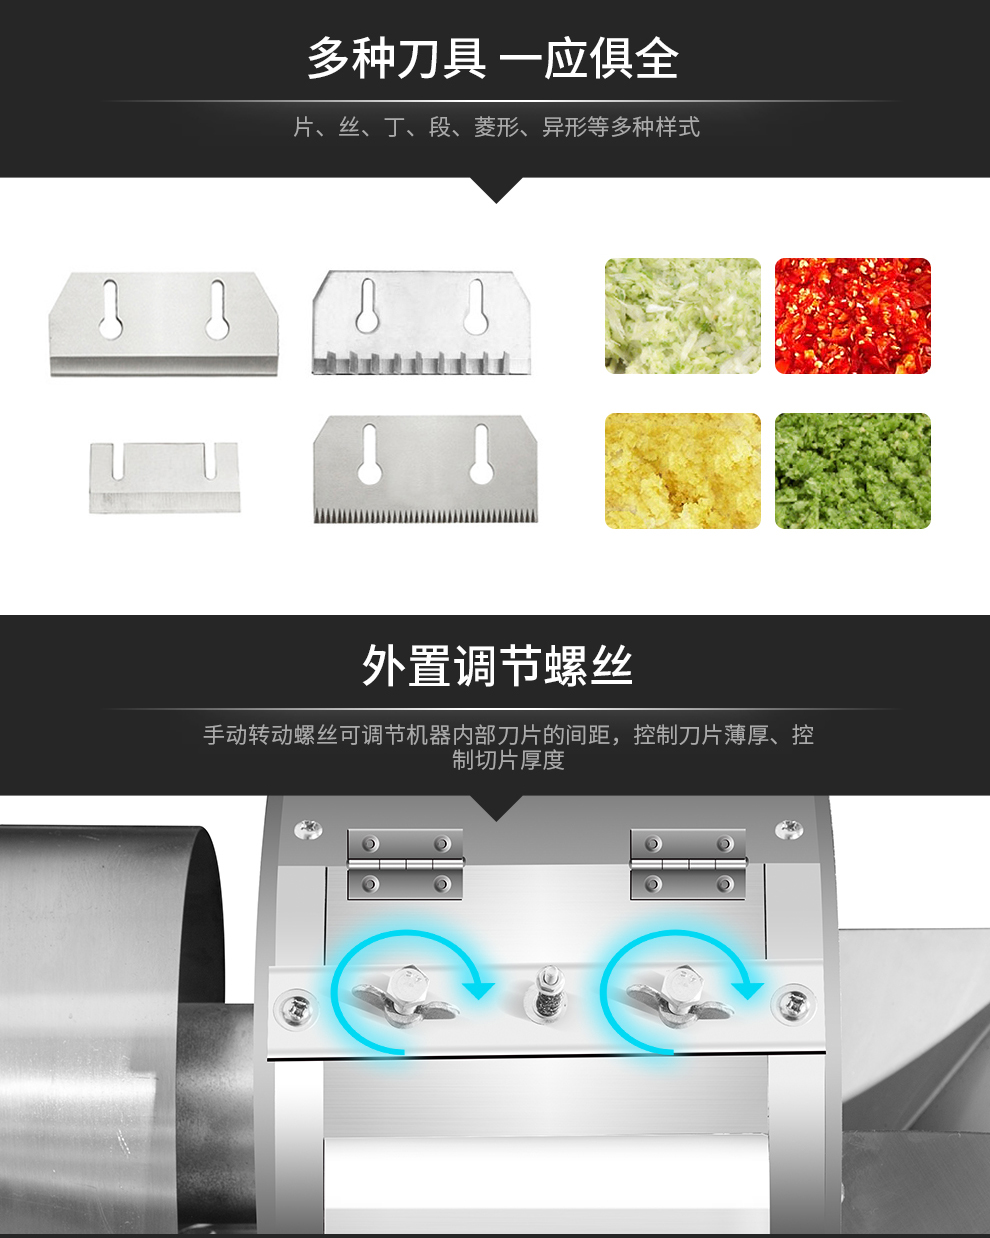 万杰牌660电动切菜机全自动食堂厨房蔬菜切丝片丁段器多功能切菜机商用